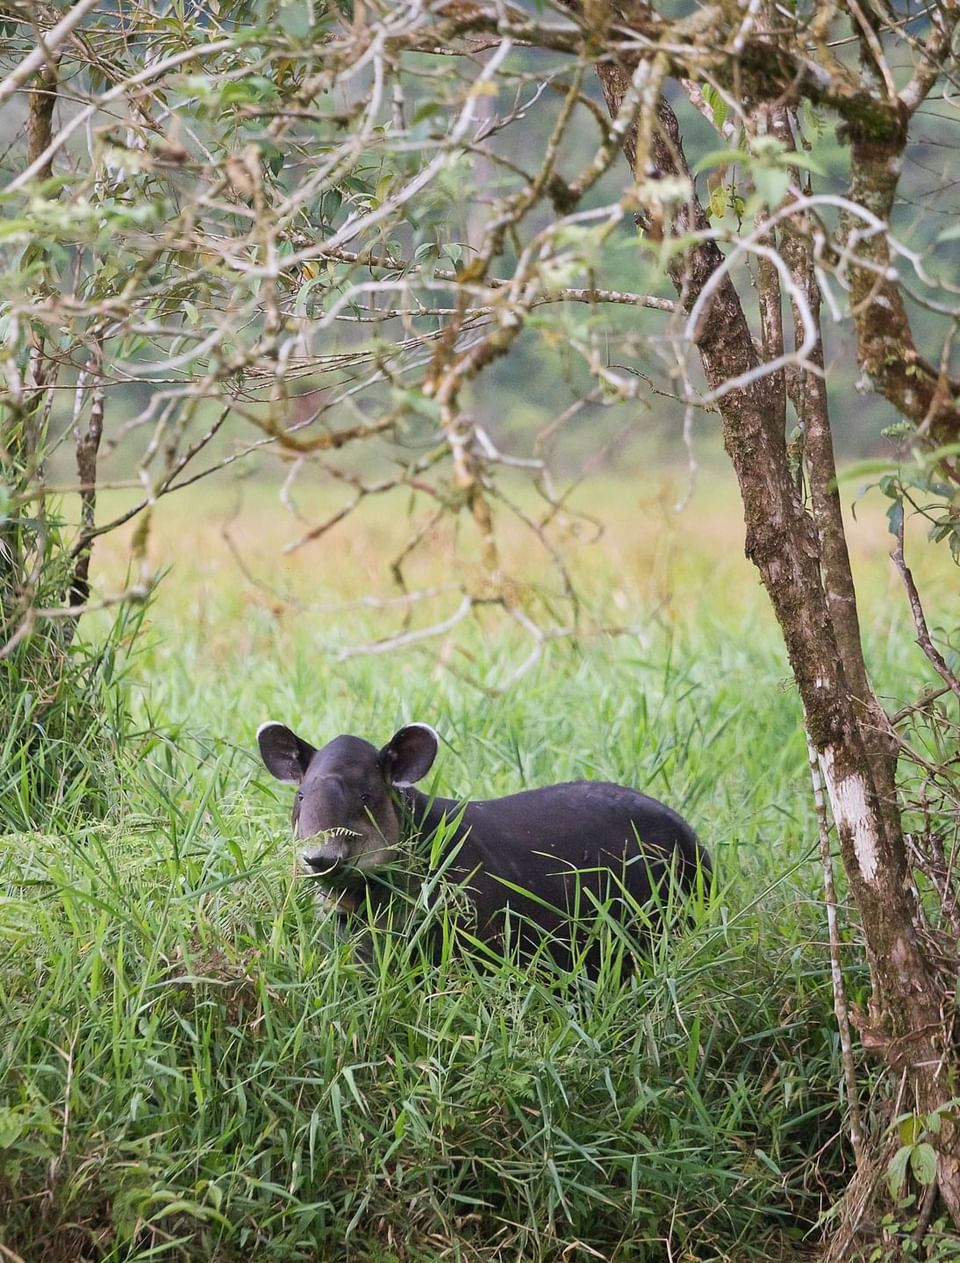 Baird's tapir captured in a field near Hideaway Rio Celeste